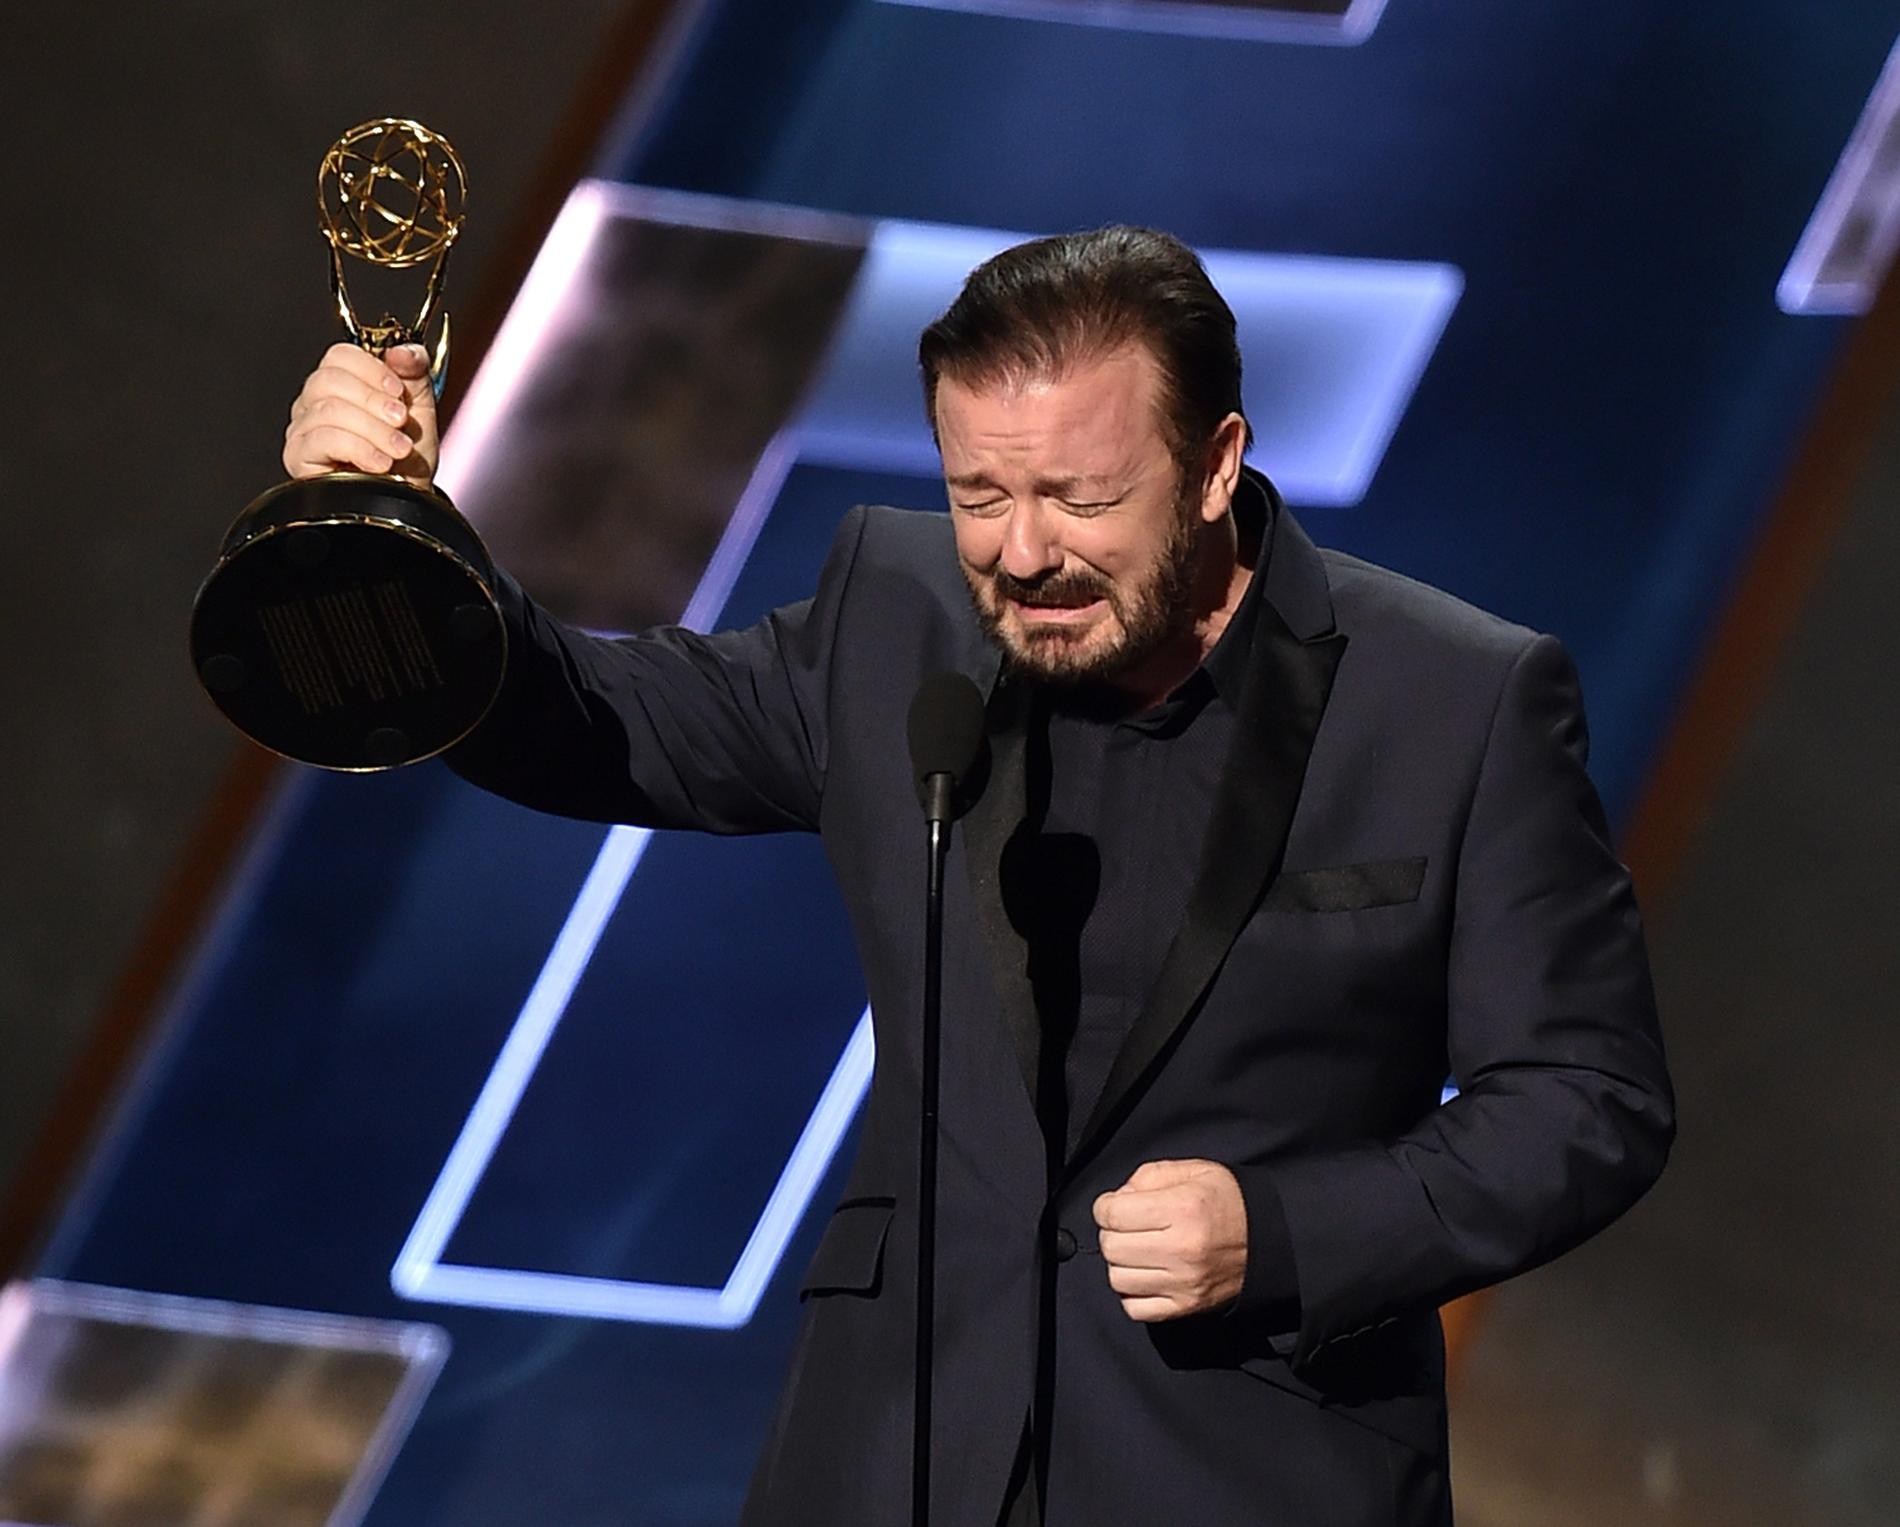 ”Ta en bild på mig med den här i handen så kommer det om några år se ut som att jag verkligen vunnit det här priset”, skämtade Ricky Gervais.